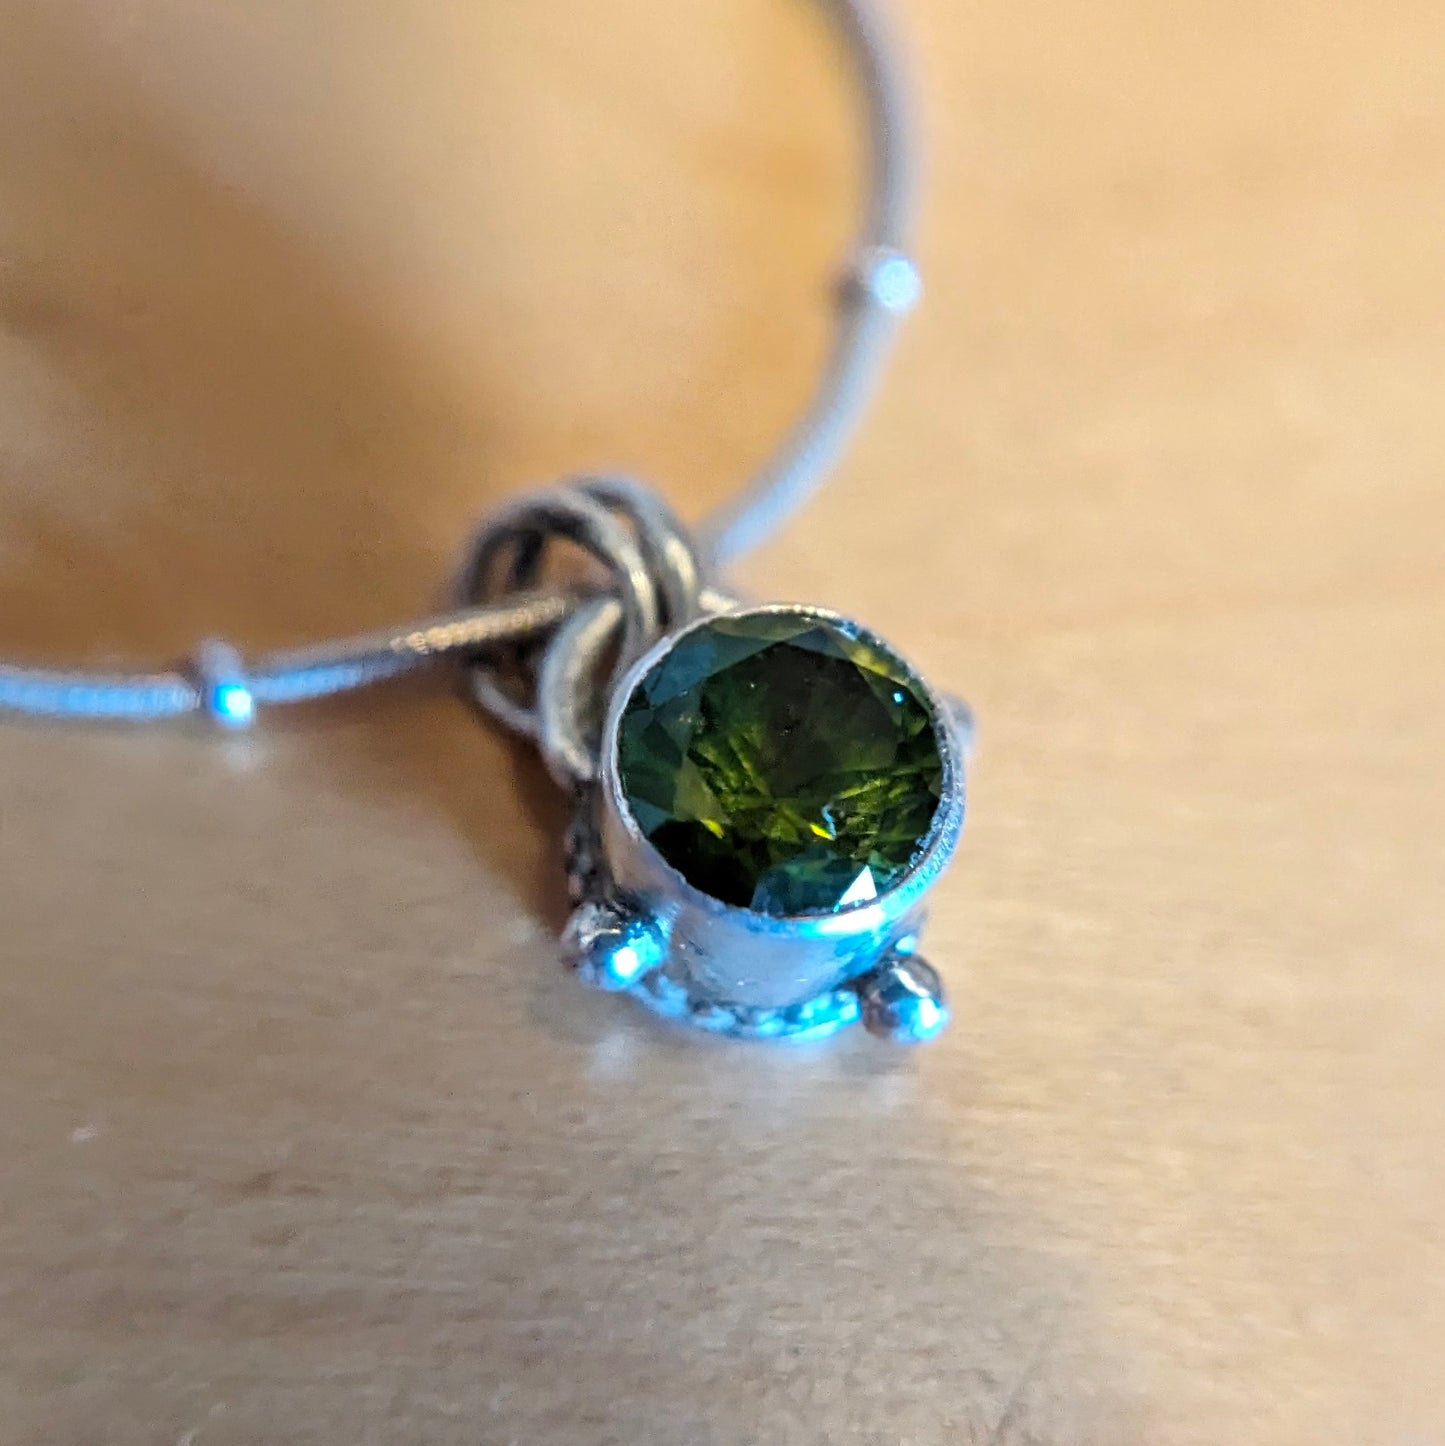 Mini Peridot Necklace